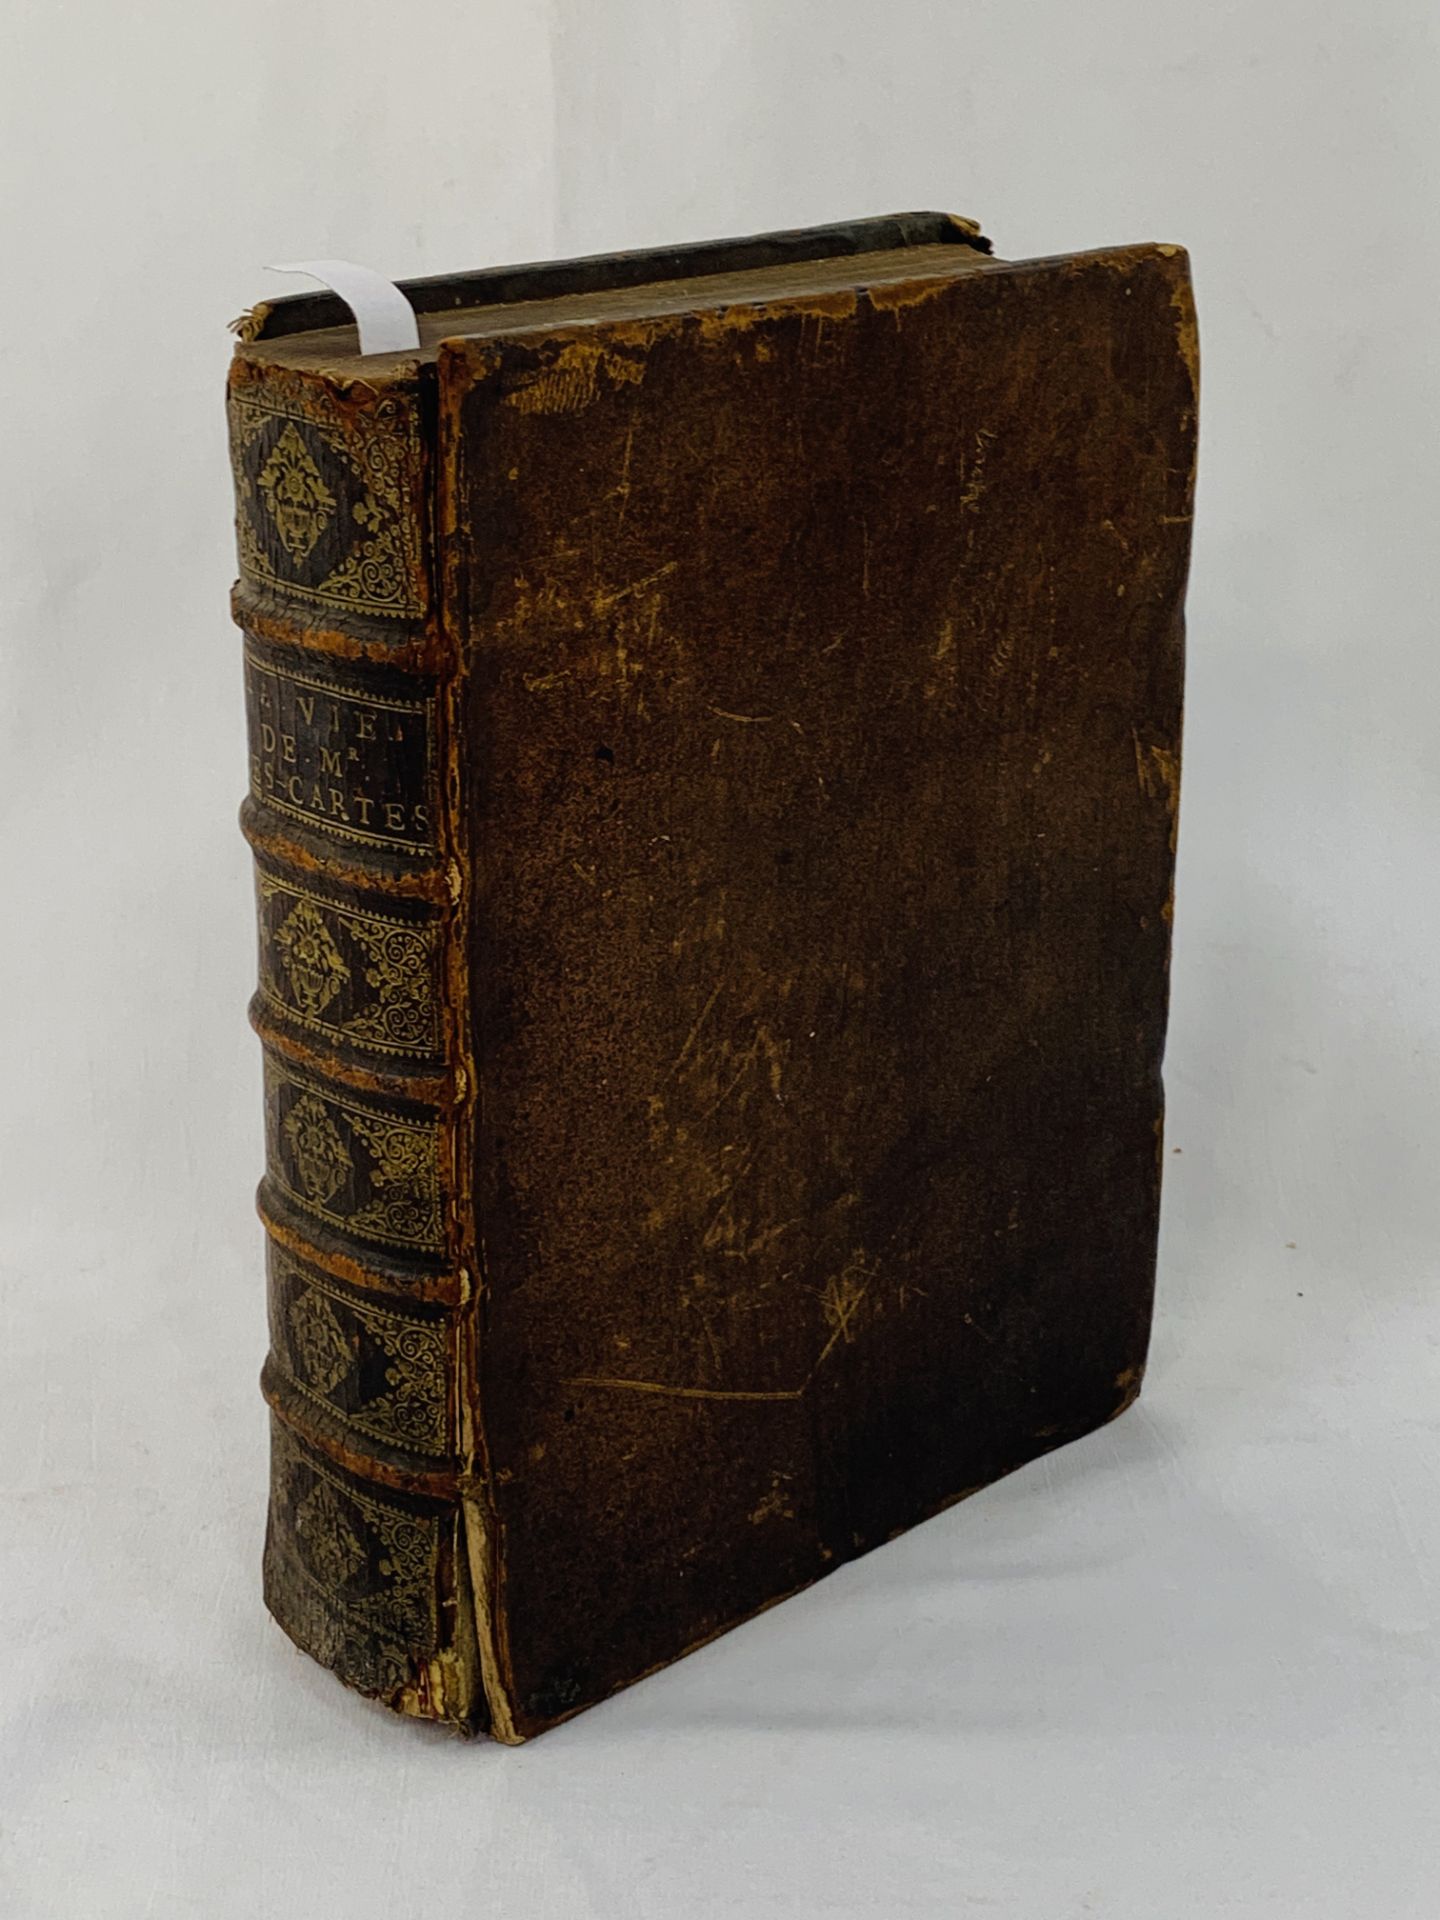 La Vie de Monsieur Rene Descartes, by ? Adrien Baillet, 2 volumes bound in 1, published Paris 1691